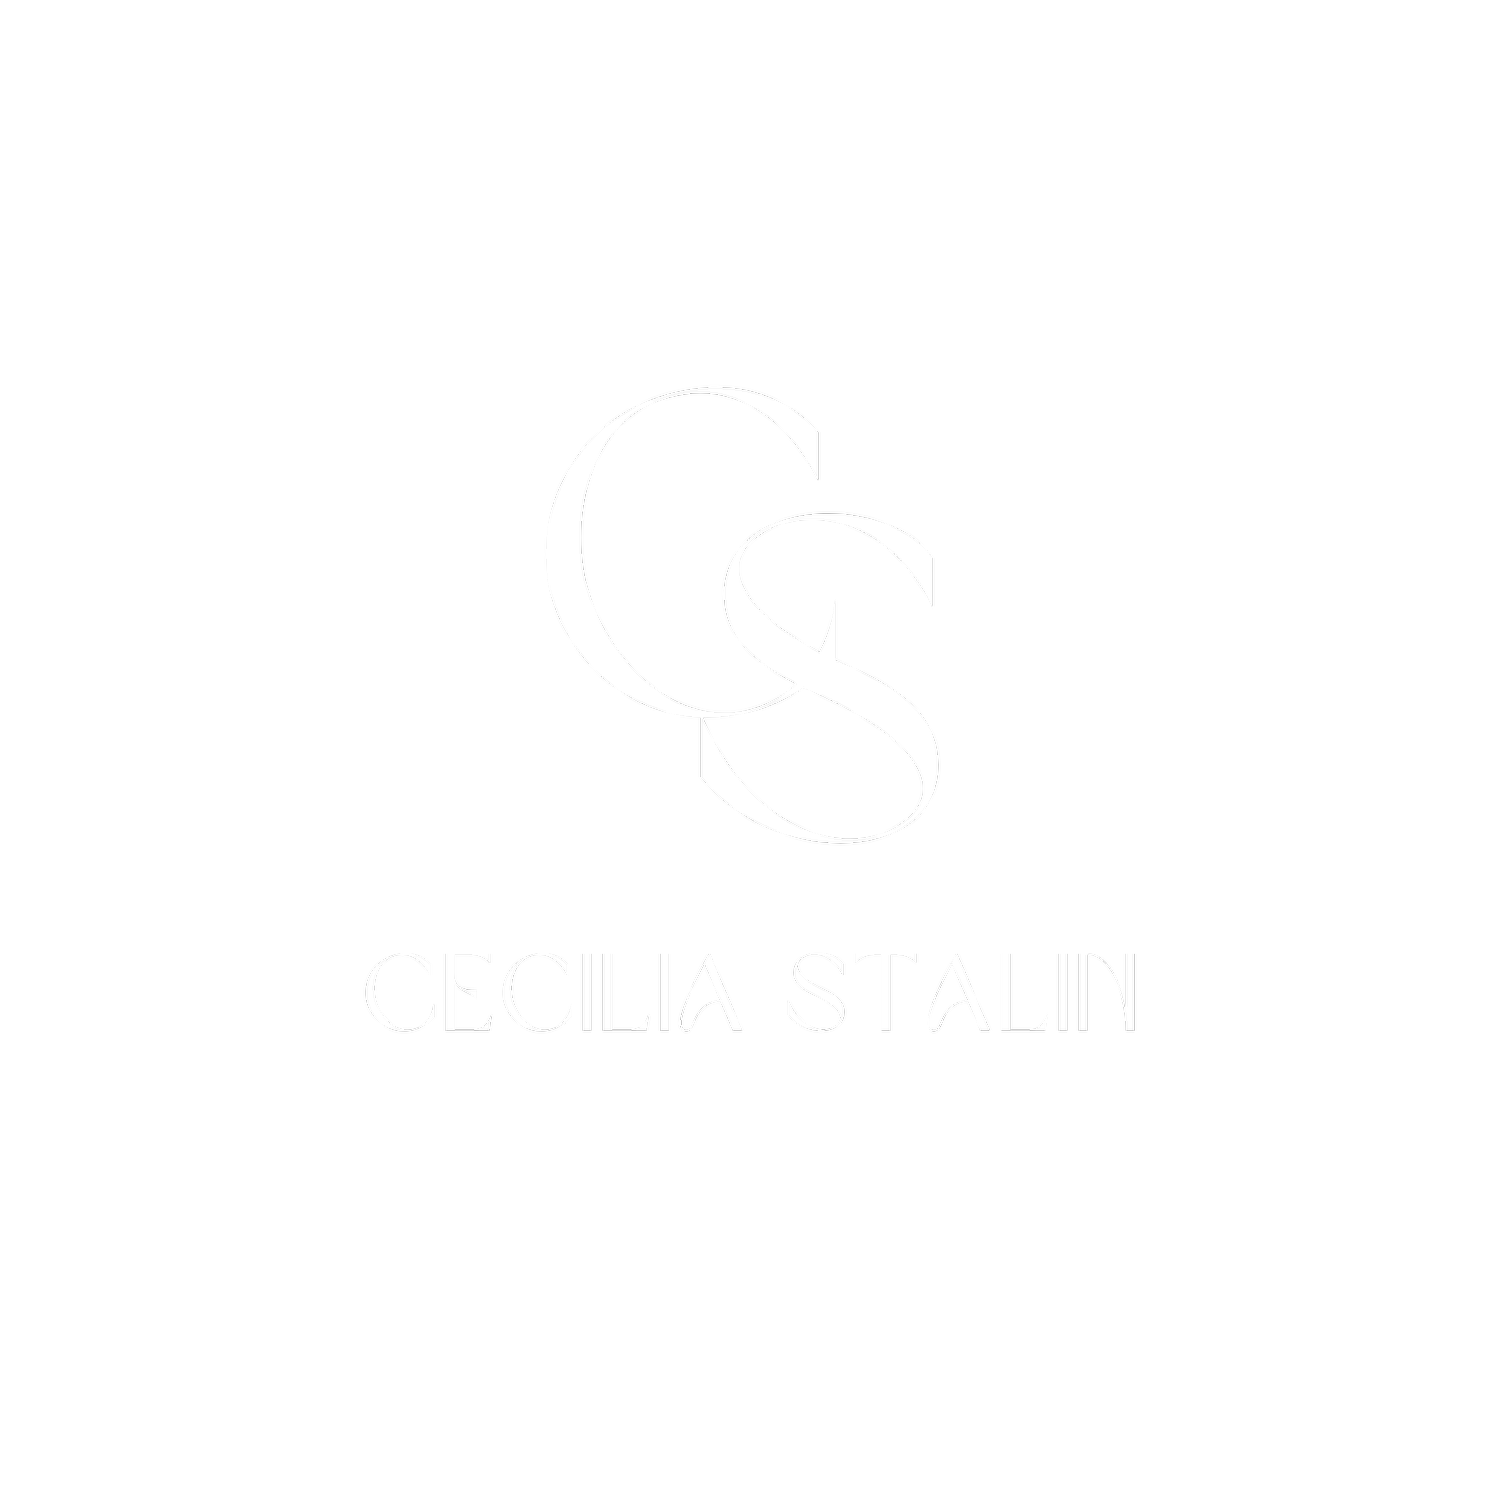 Cecilia Stalin